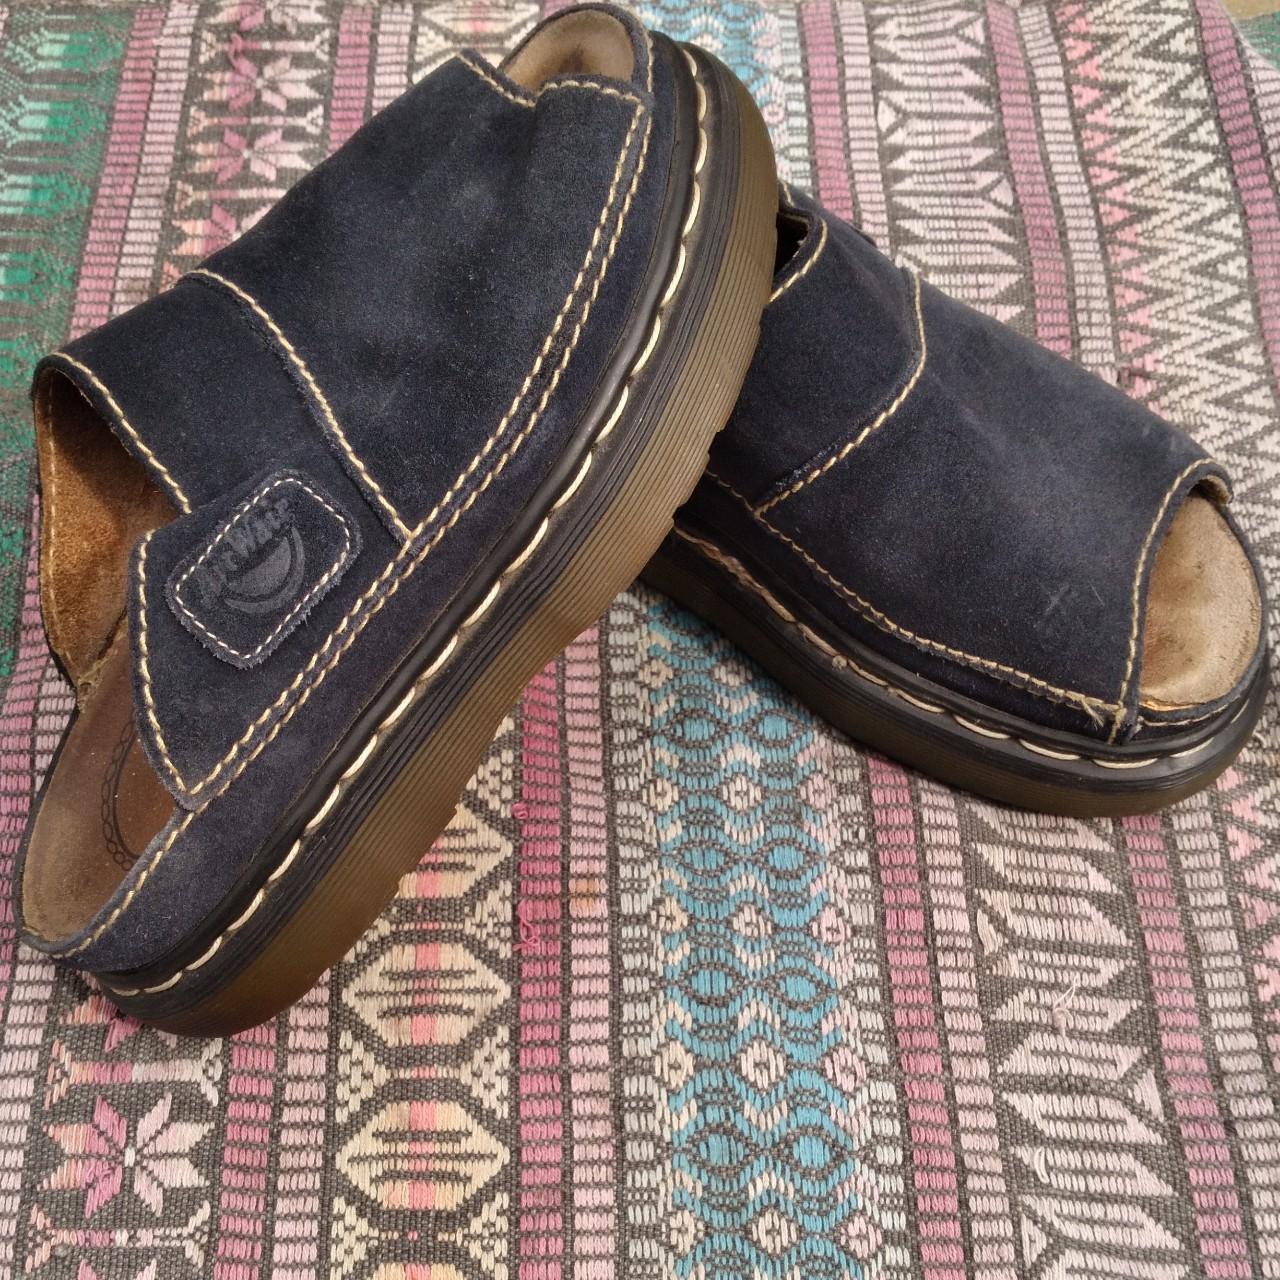 RARE Vintage Dr. Marten Platform Sandals These are... - Depop